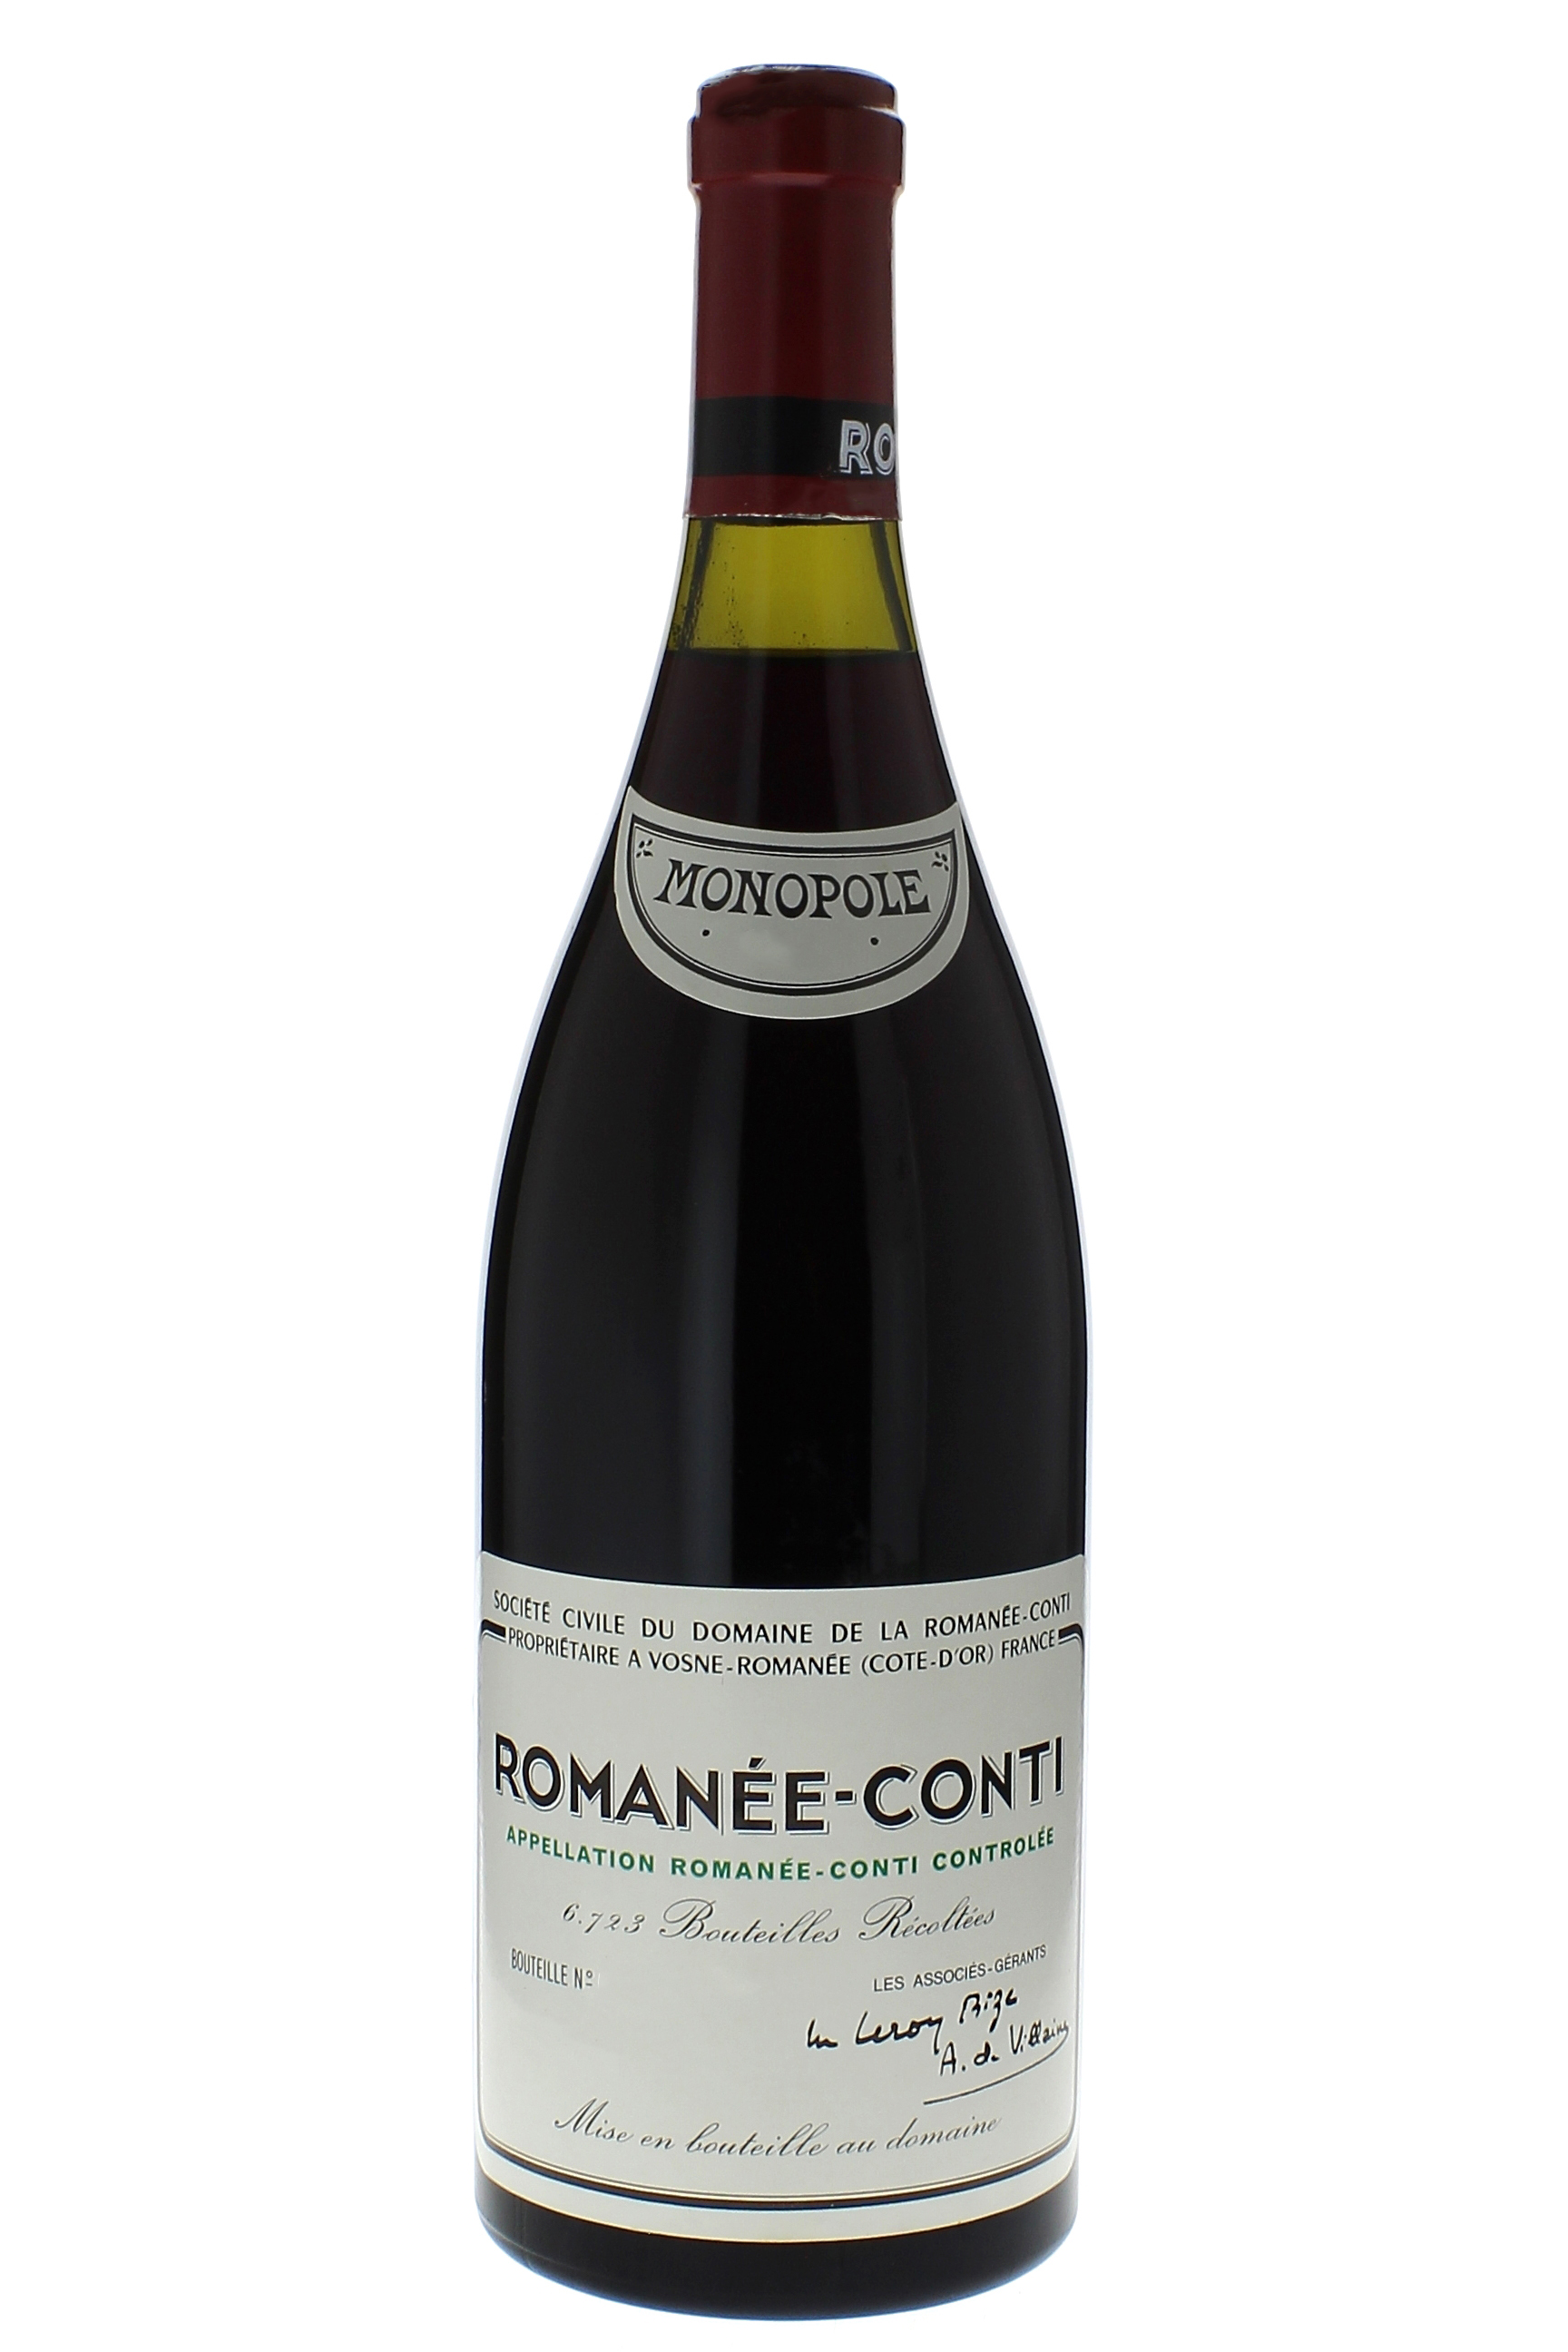 Romane conti grand cru 2001 Domaine ROMANEE CONTI, Bourgogne rouge